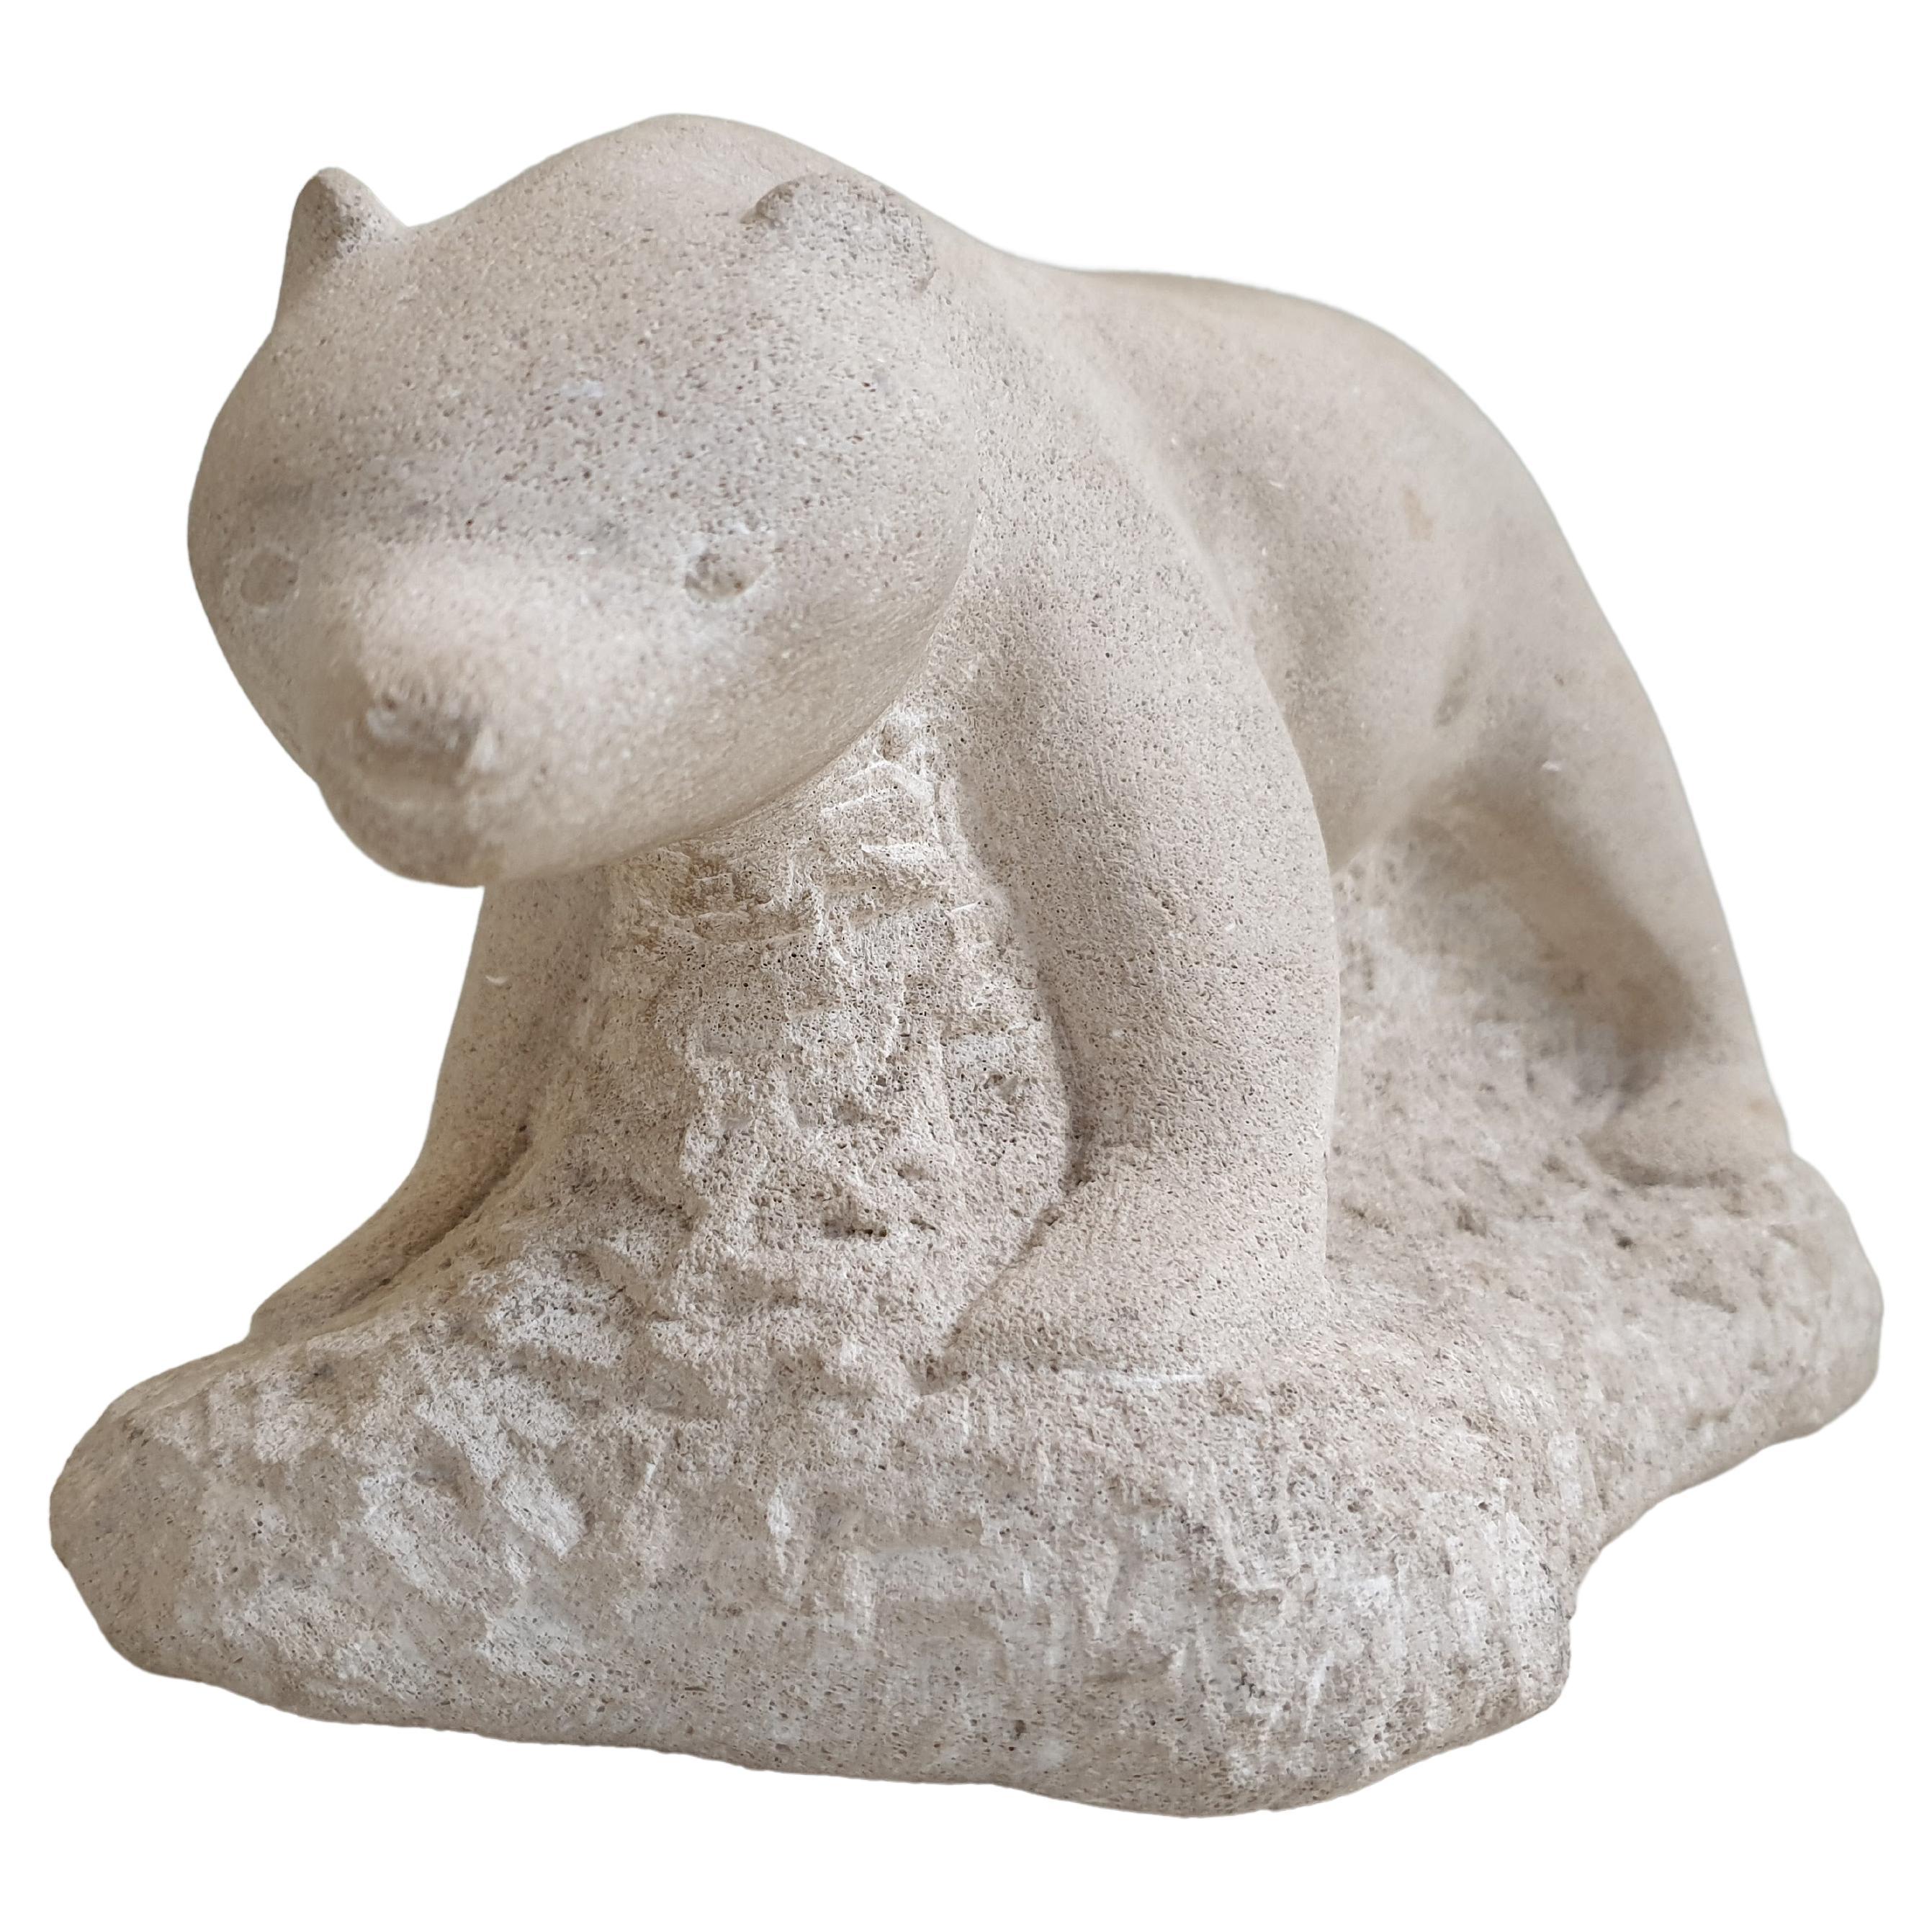 Cette magnifique sculpture d'ours polaire en pierre a une qualité fantaisiste. L'ours est magnifiquement sculpté et son visage a une expression douce, il s'agit peut-être d'un ourson polaire. Il est rare de voir un artiste, P. Klinck, capable de